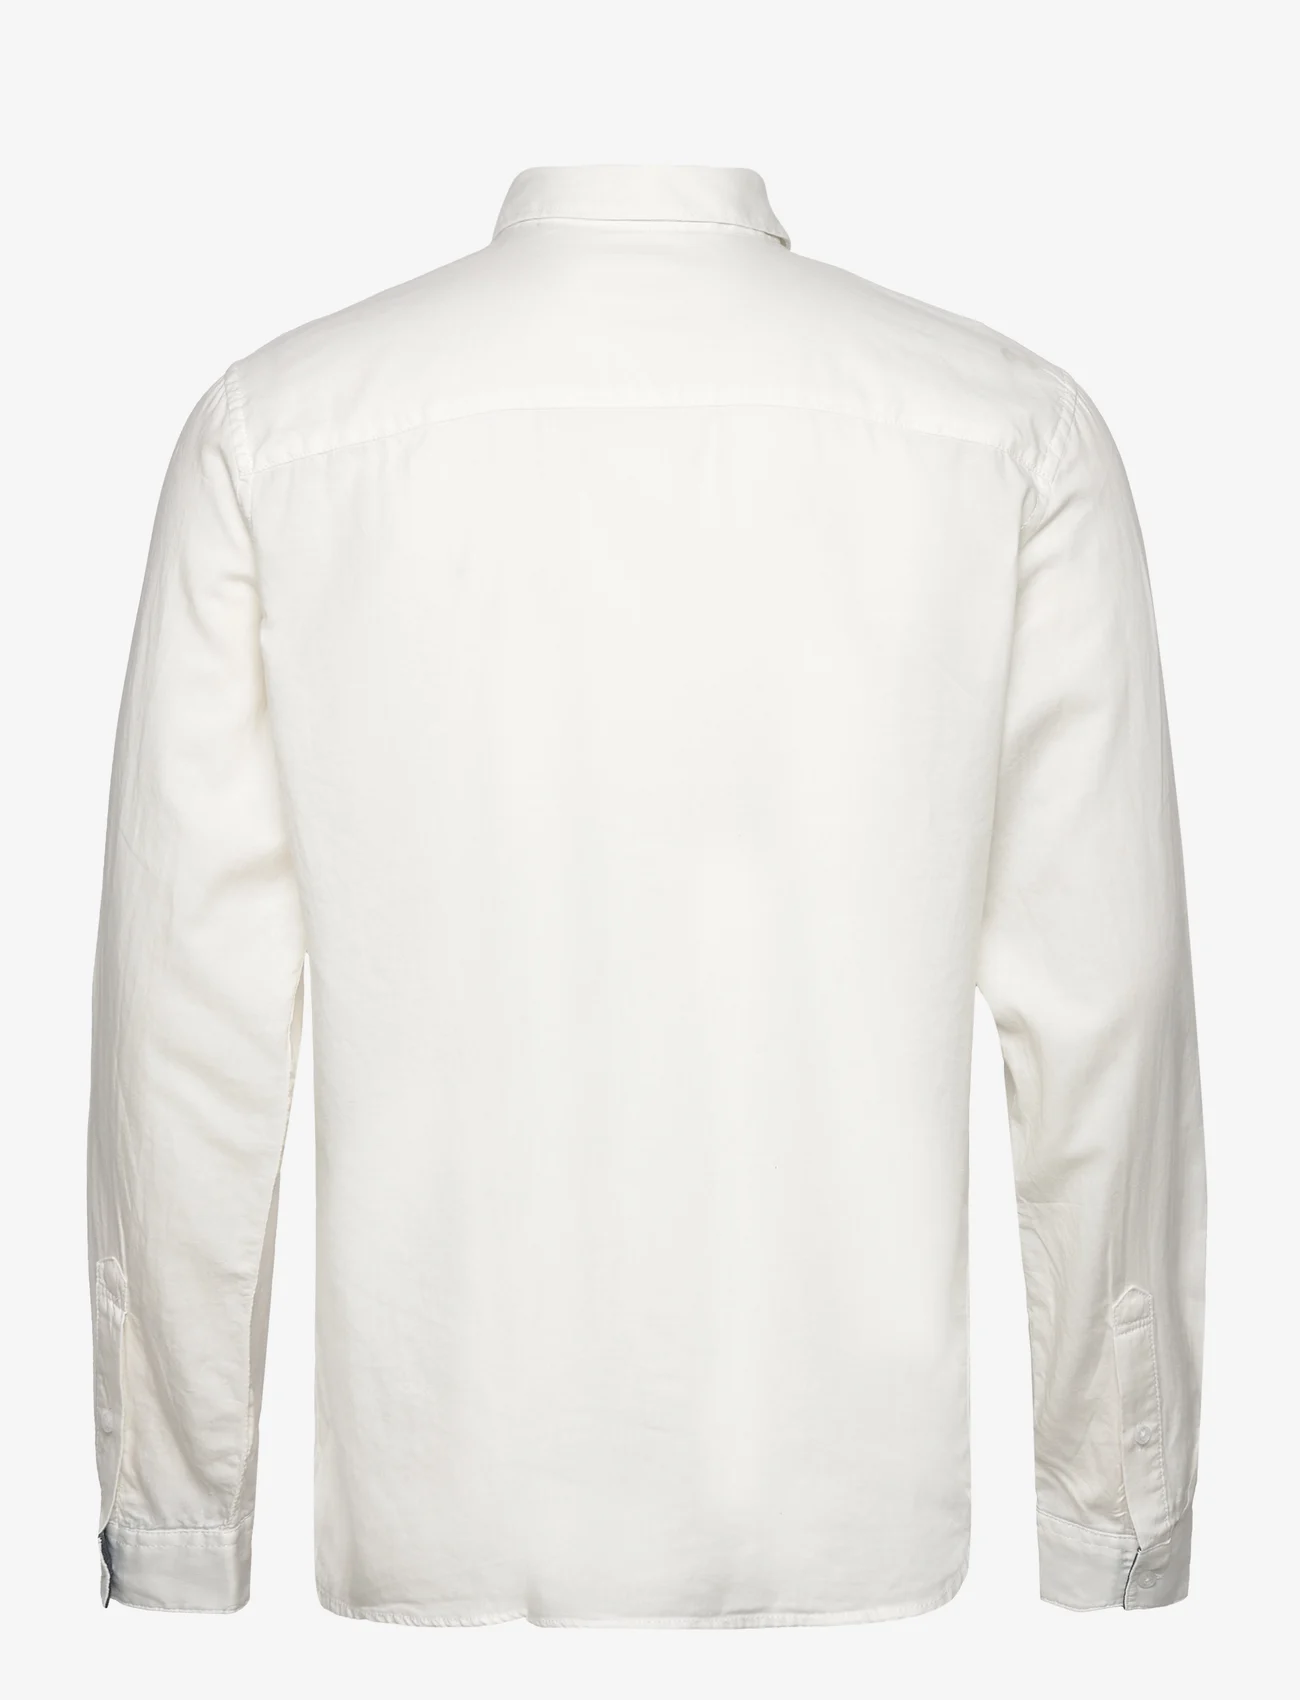 Tom Tailor - smart shirt - mažiausios kainos - off white - 1